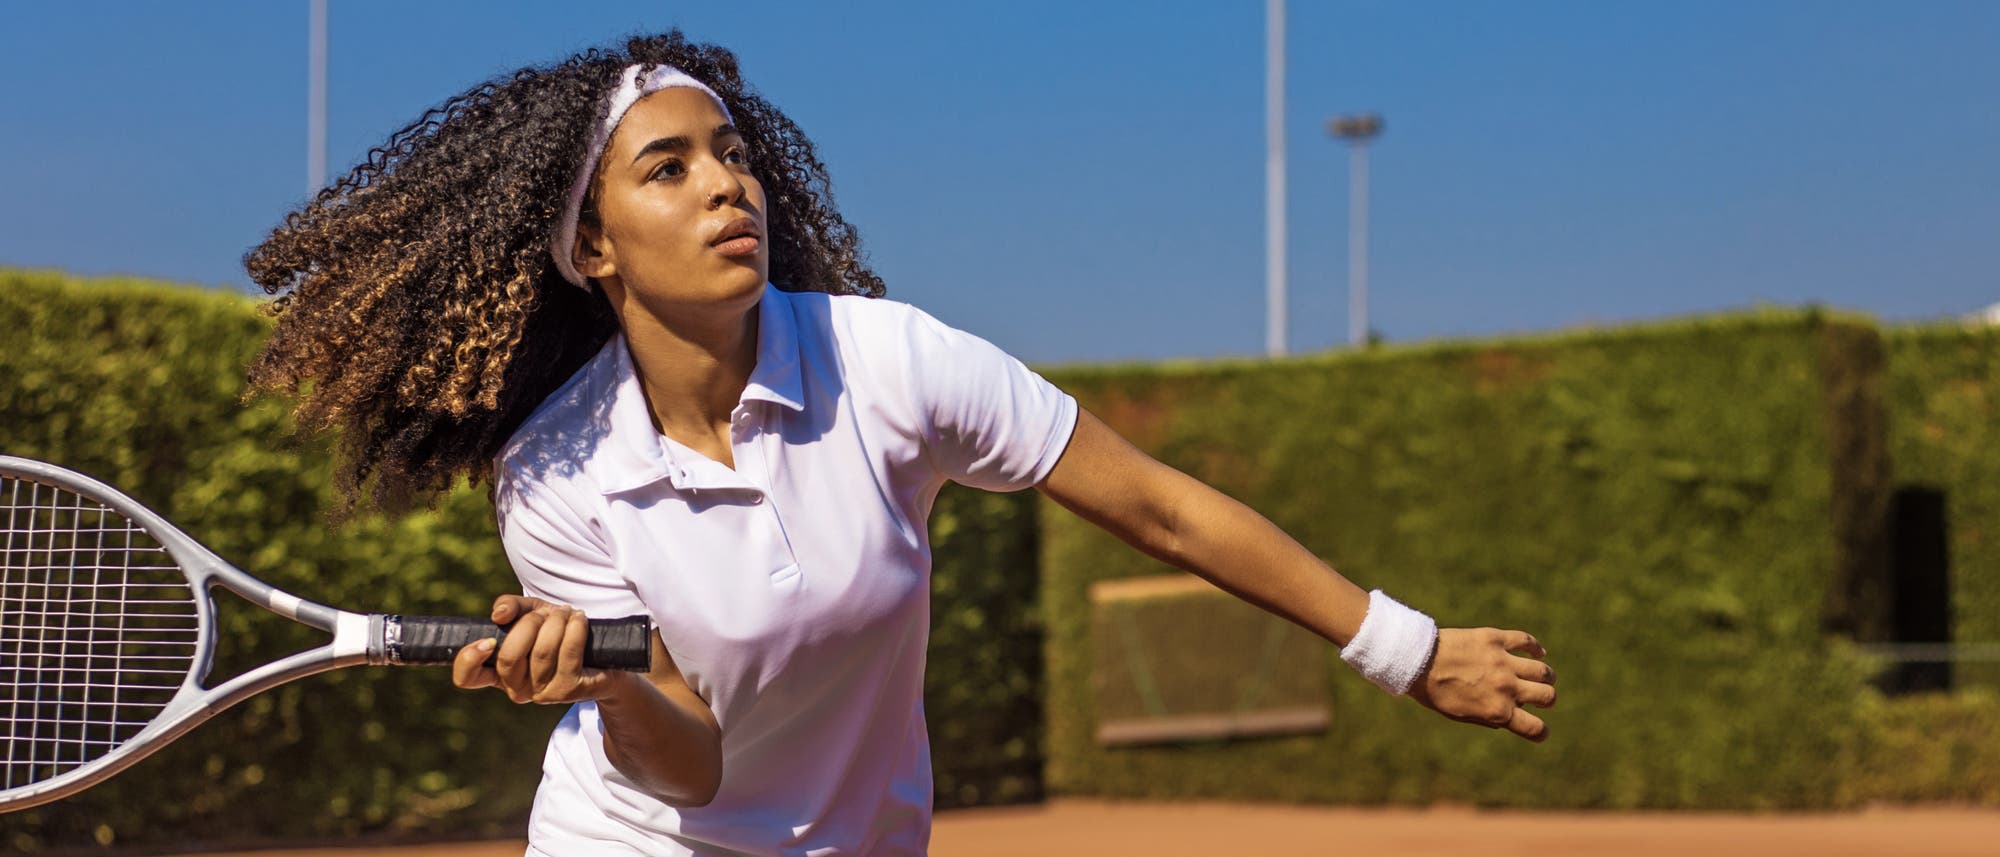 Tennis spielen ist gut für das Gehirn, kann bei wiederholt falscher Belastung aber dem Ellenbogen schaden.